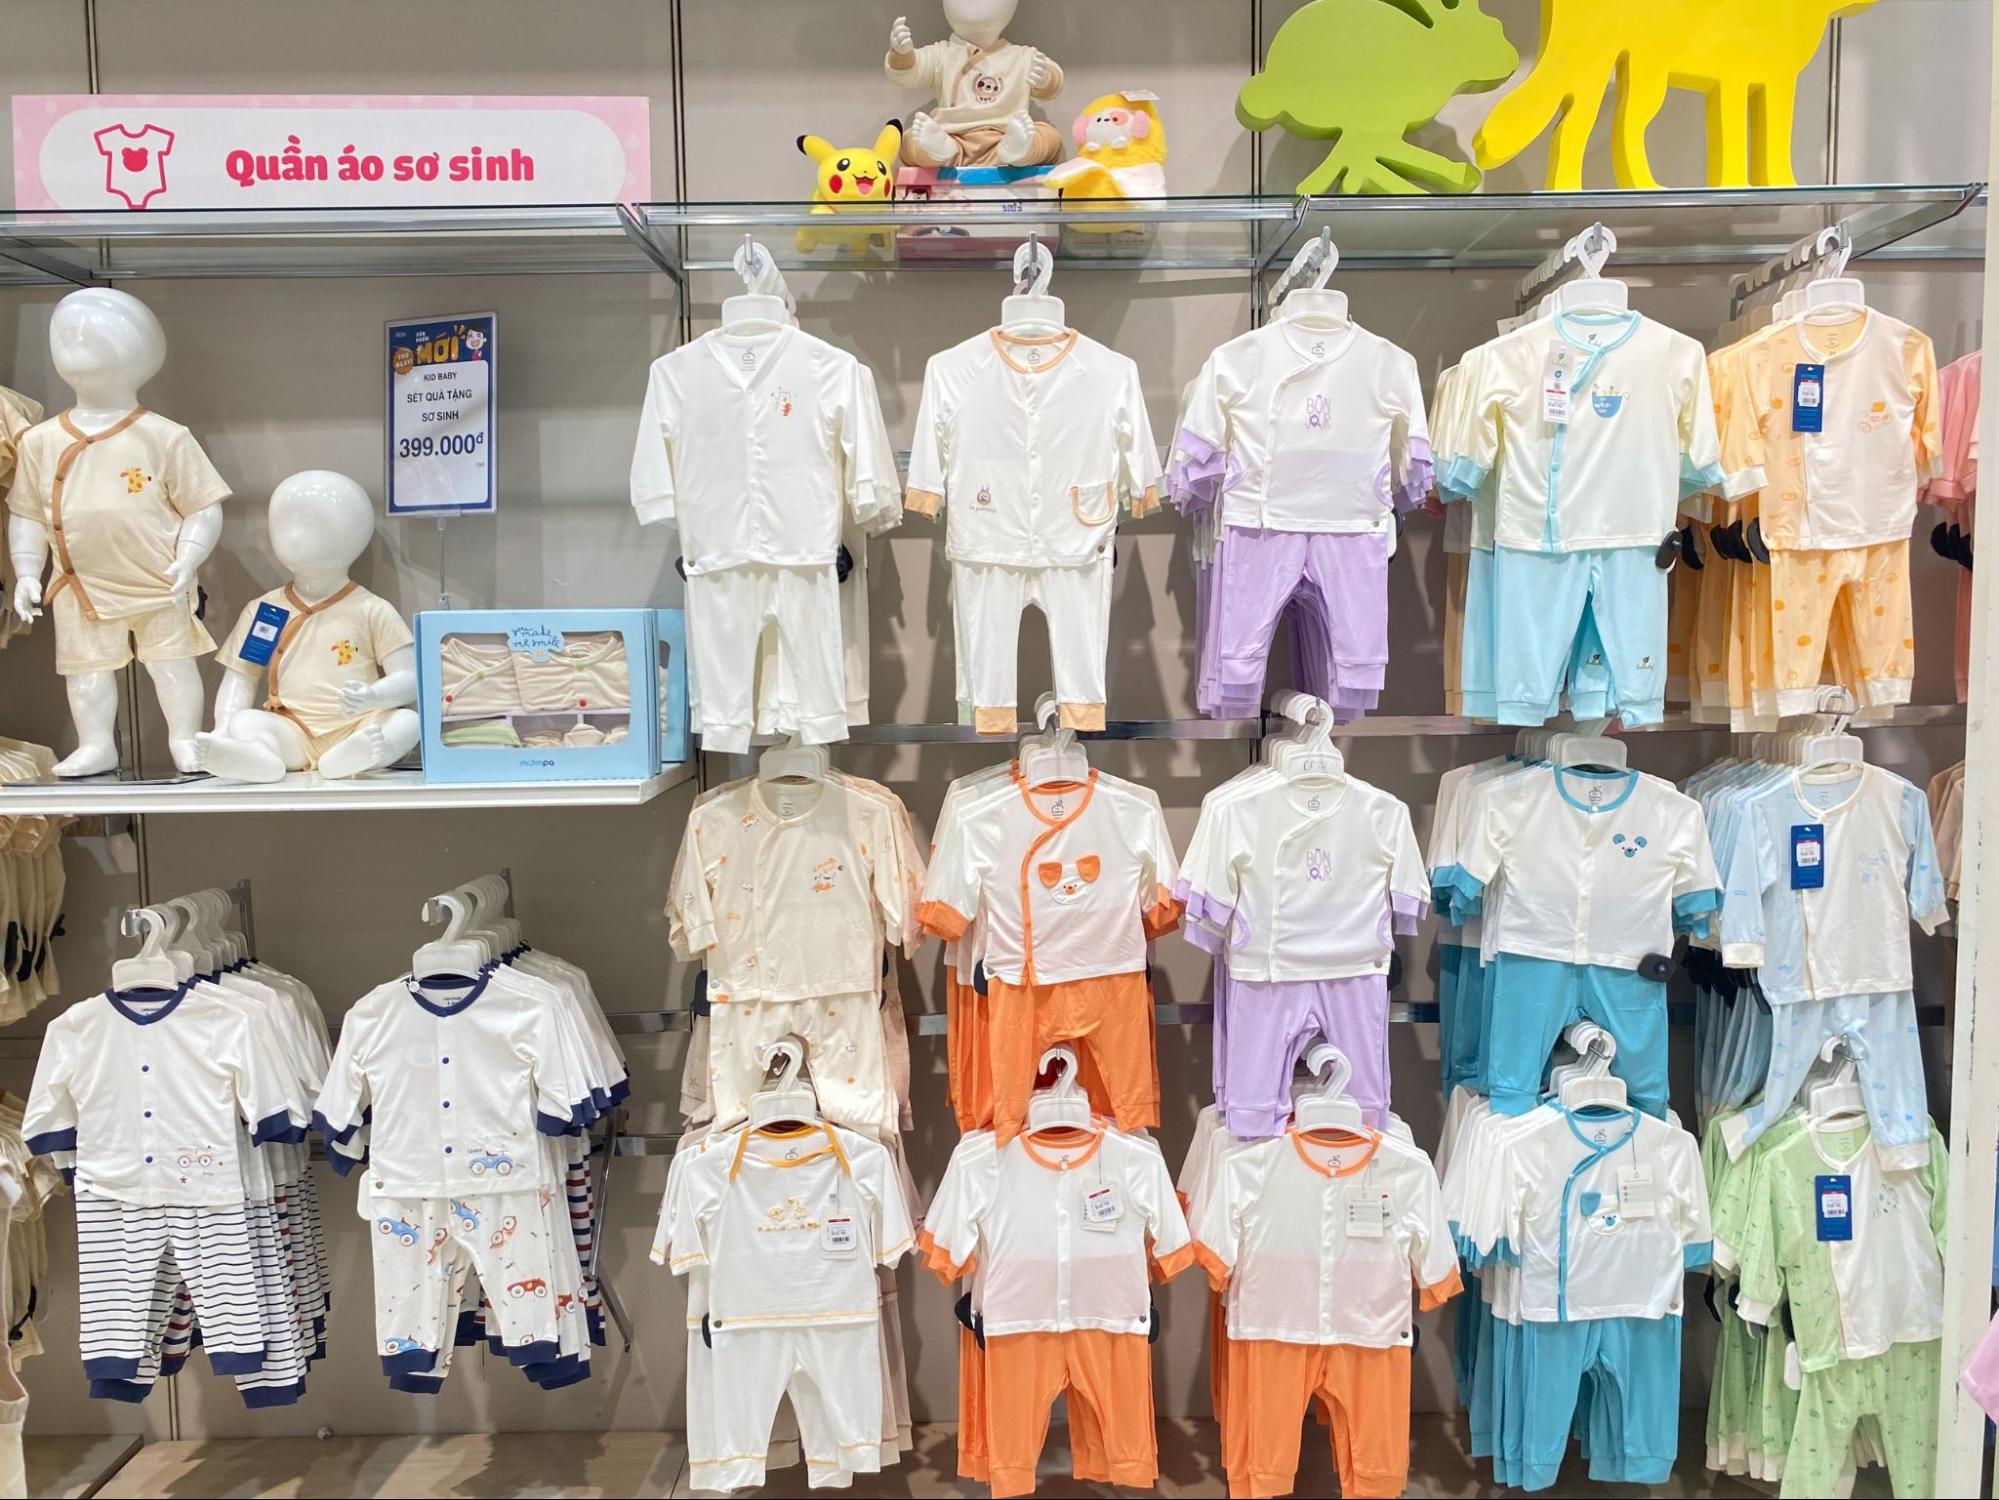 Siêu thị AEON chuyên cung cấp quần áo trẻ em chất lượng và uy tín trên thị trường 